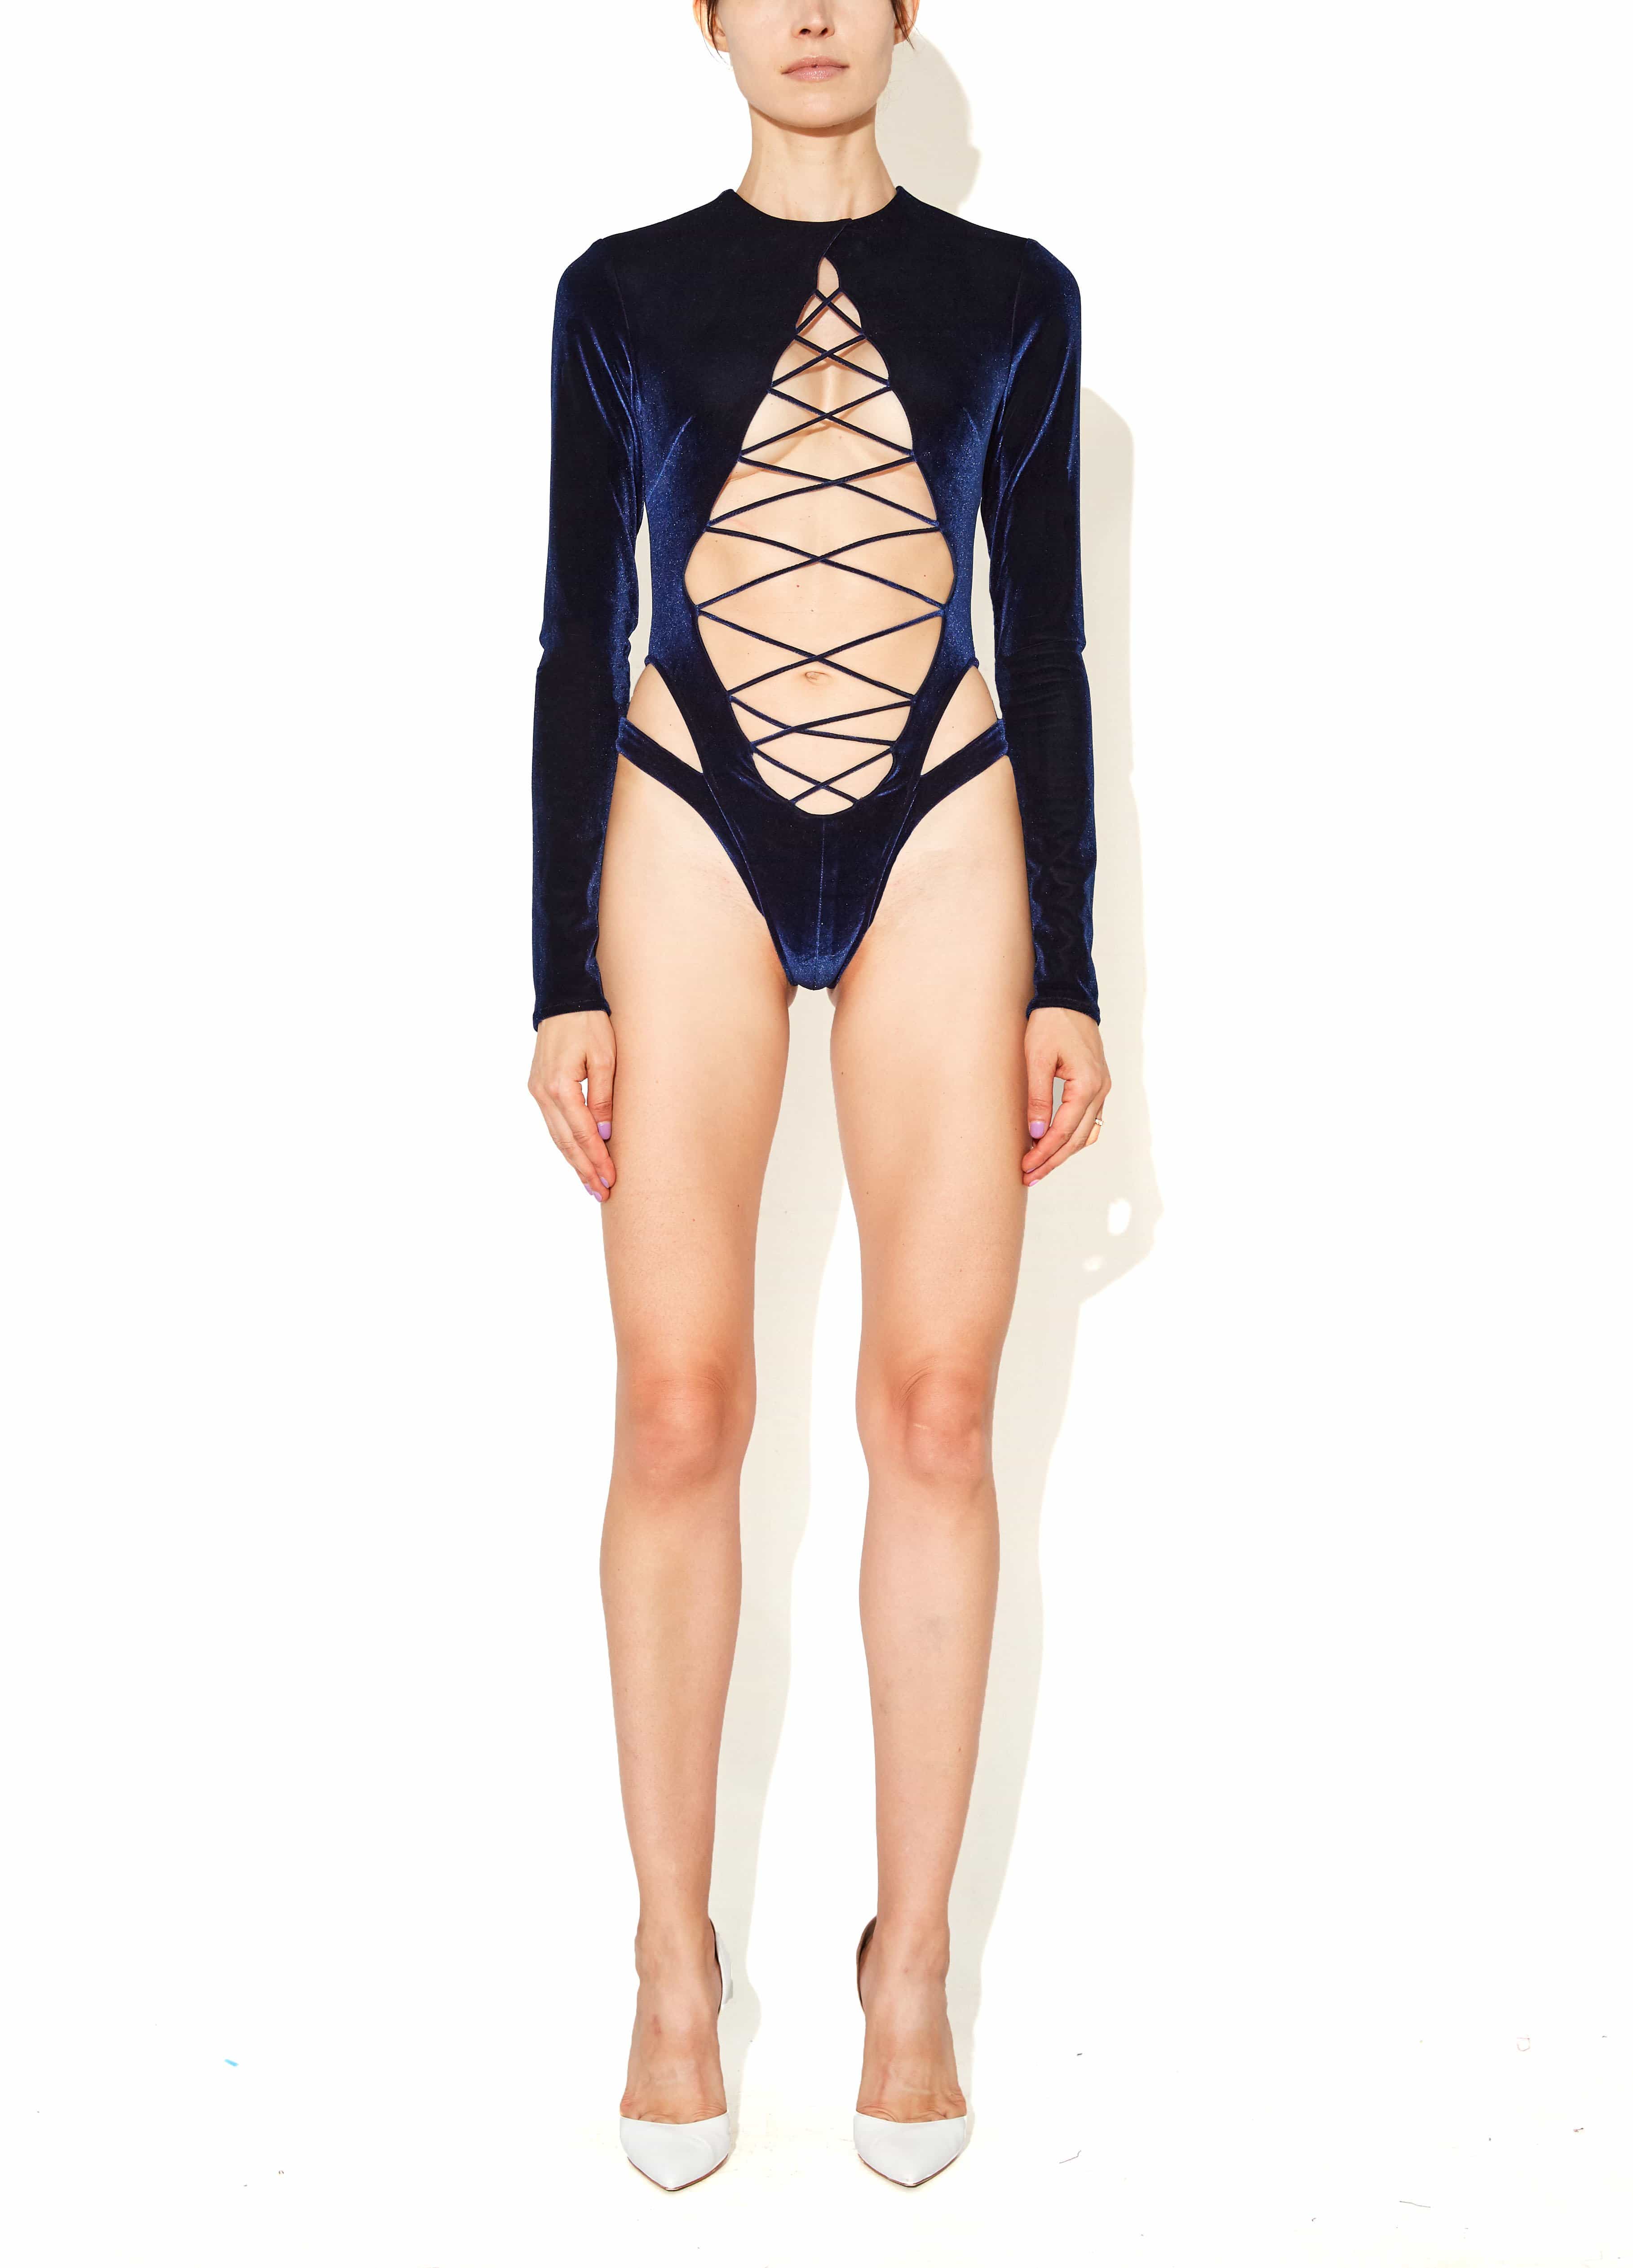 http://joynblk.com/cdn/shop/products/laquan-smith-bodysuits-lace-up-bodysuit-28280054087738.jpg?v=1659033042